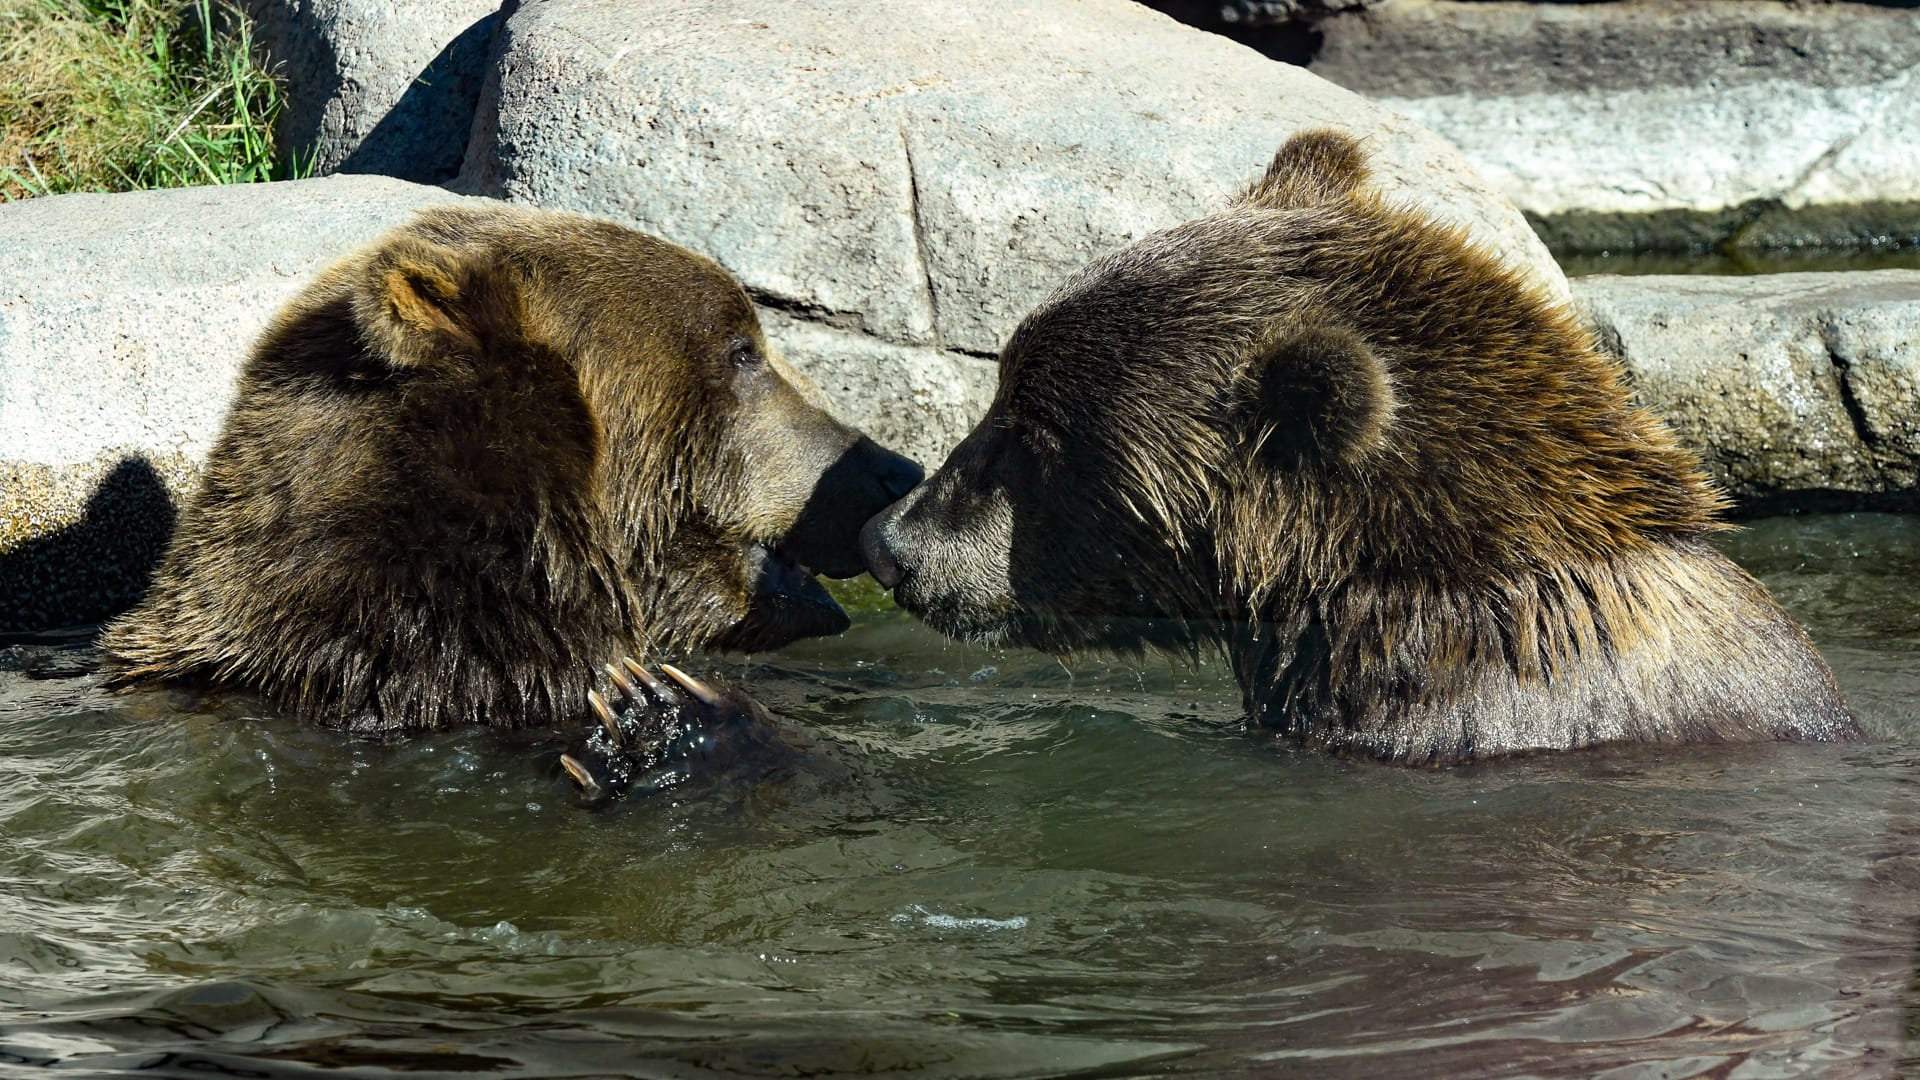 Kodiak Bears at Wildwood Park & Zoo